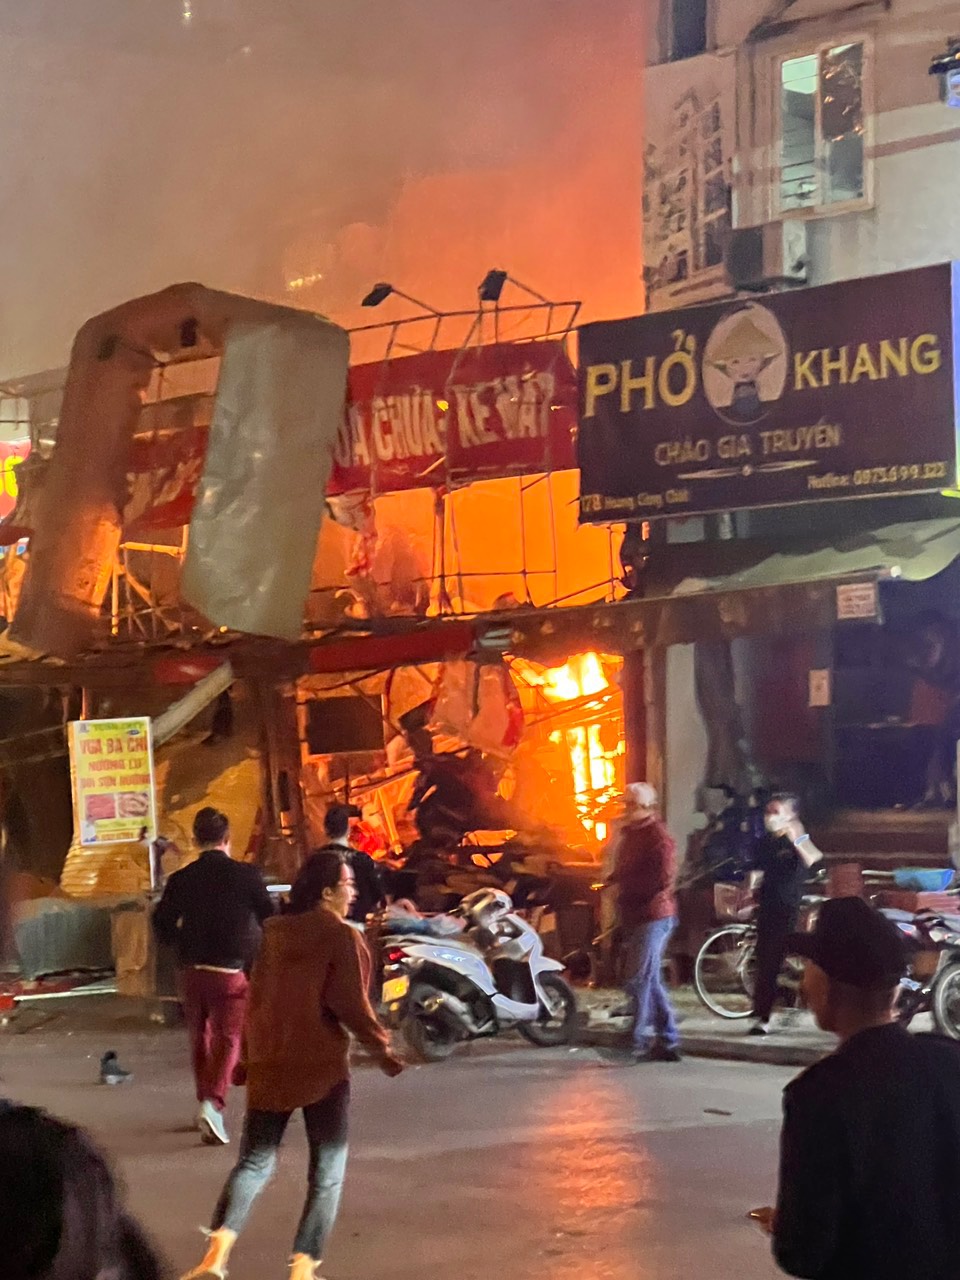 Cảnh sát bác bỏ thông tin có người tử vong trong vụ nổ lớn ở Hà Nội - Ảnh 1.